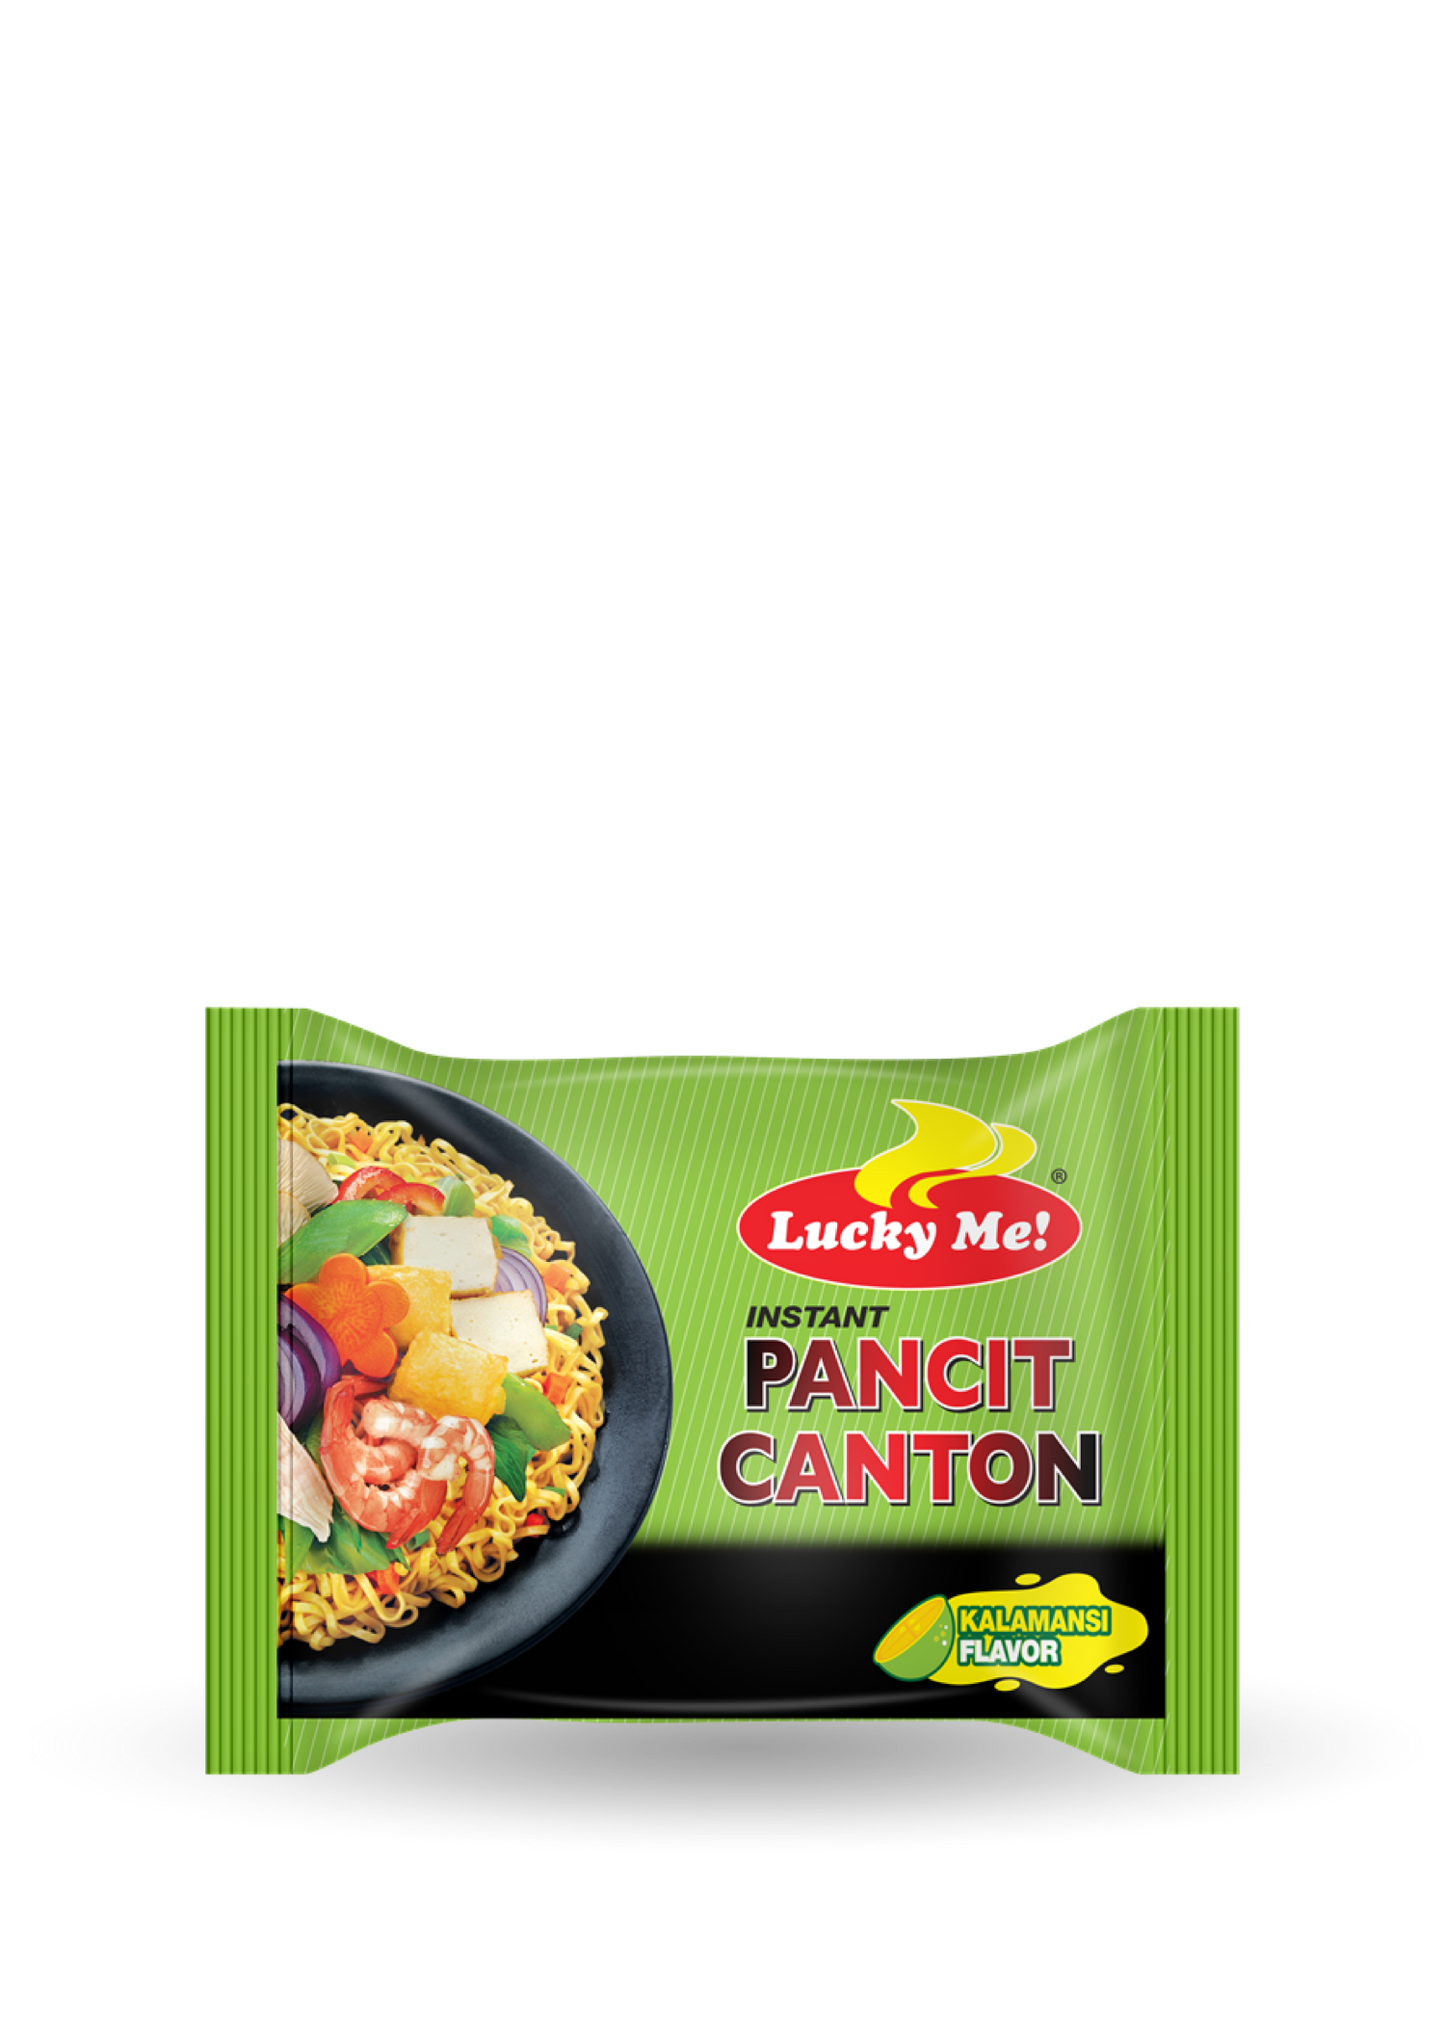 LuckyMe | Pancit Canton | Kalamansi